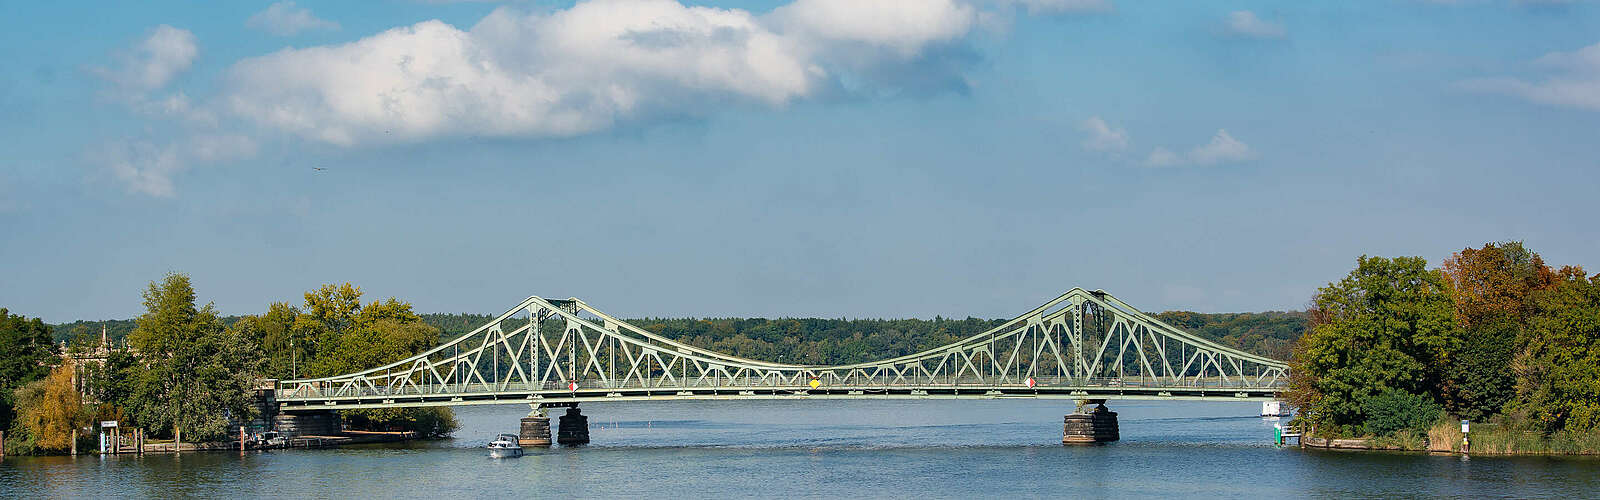 Glienicker Brücke ,
        
    

        Foto: TMB-Fotoarchiv/Steffen Lehmann